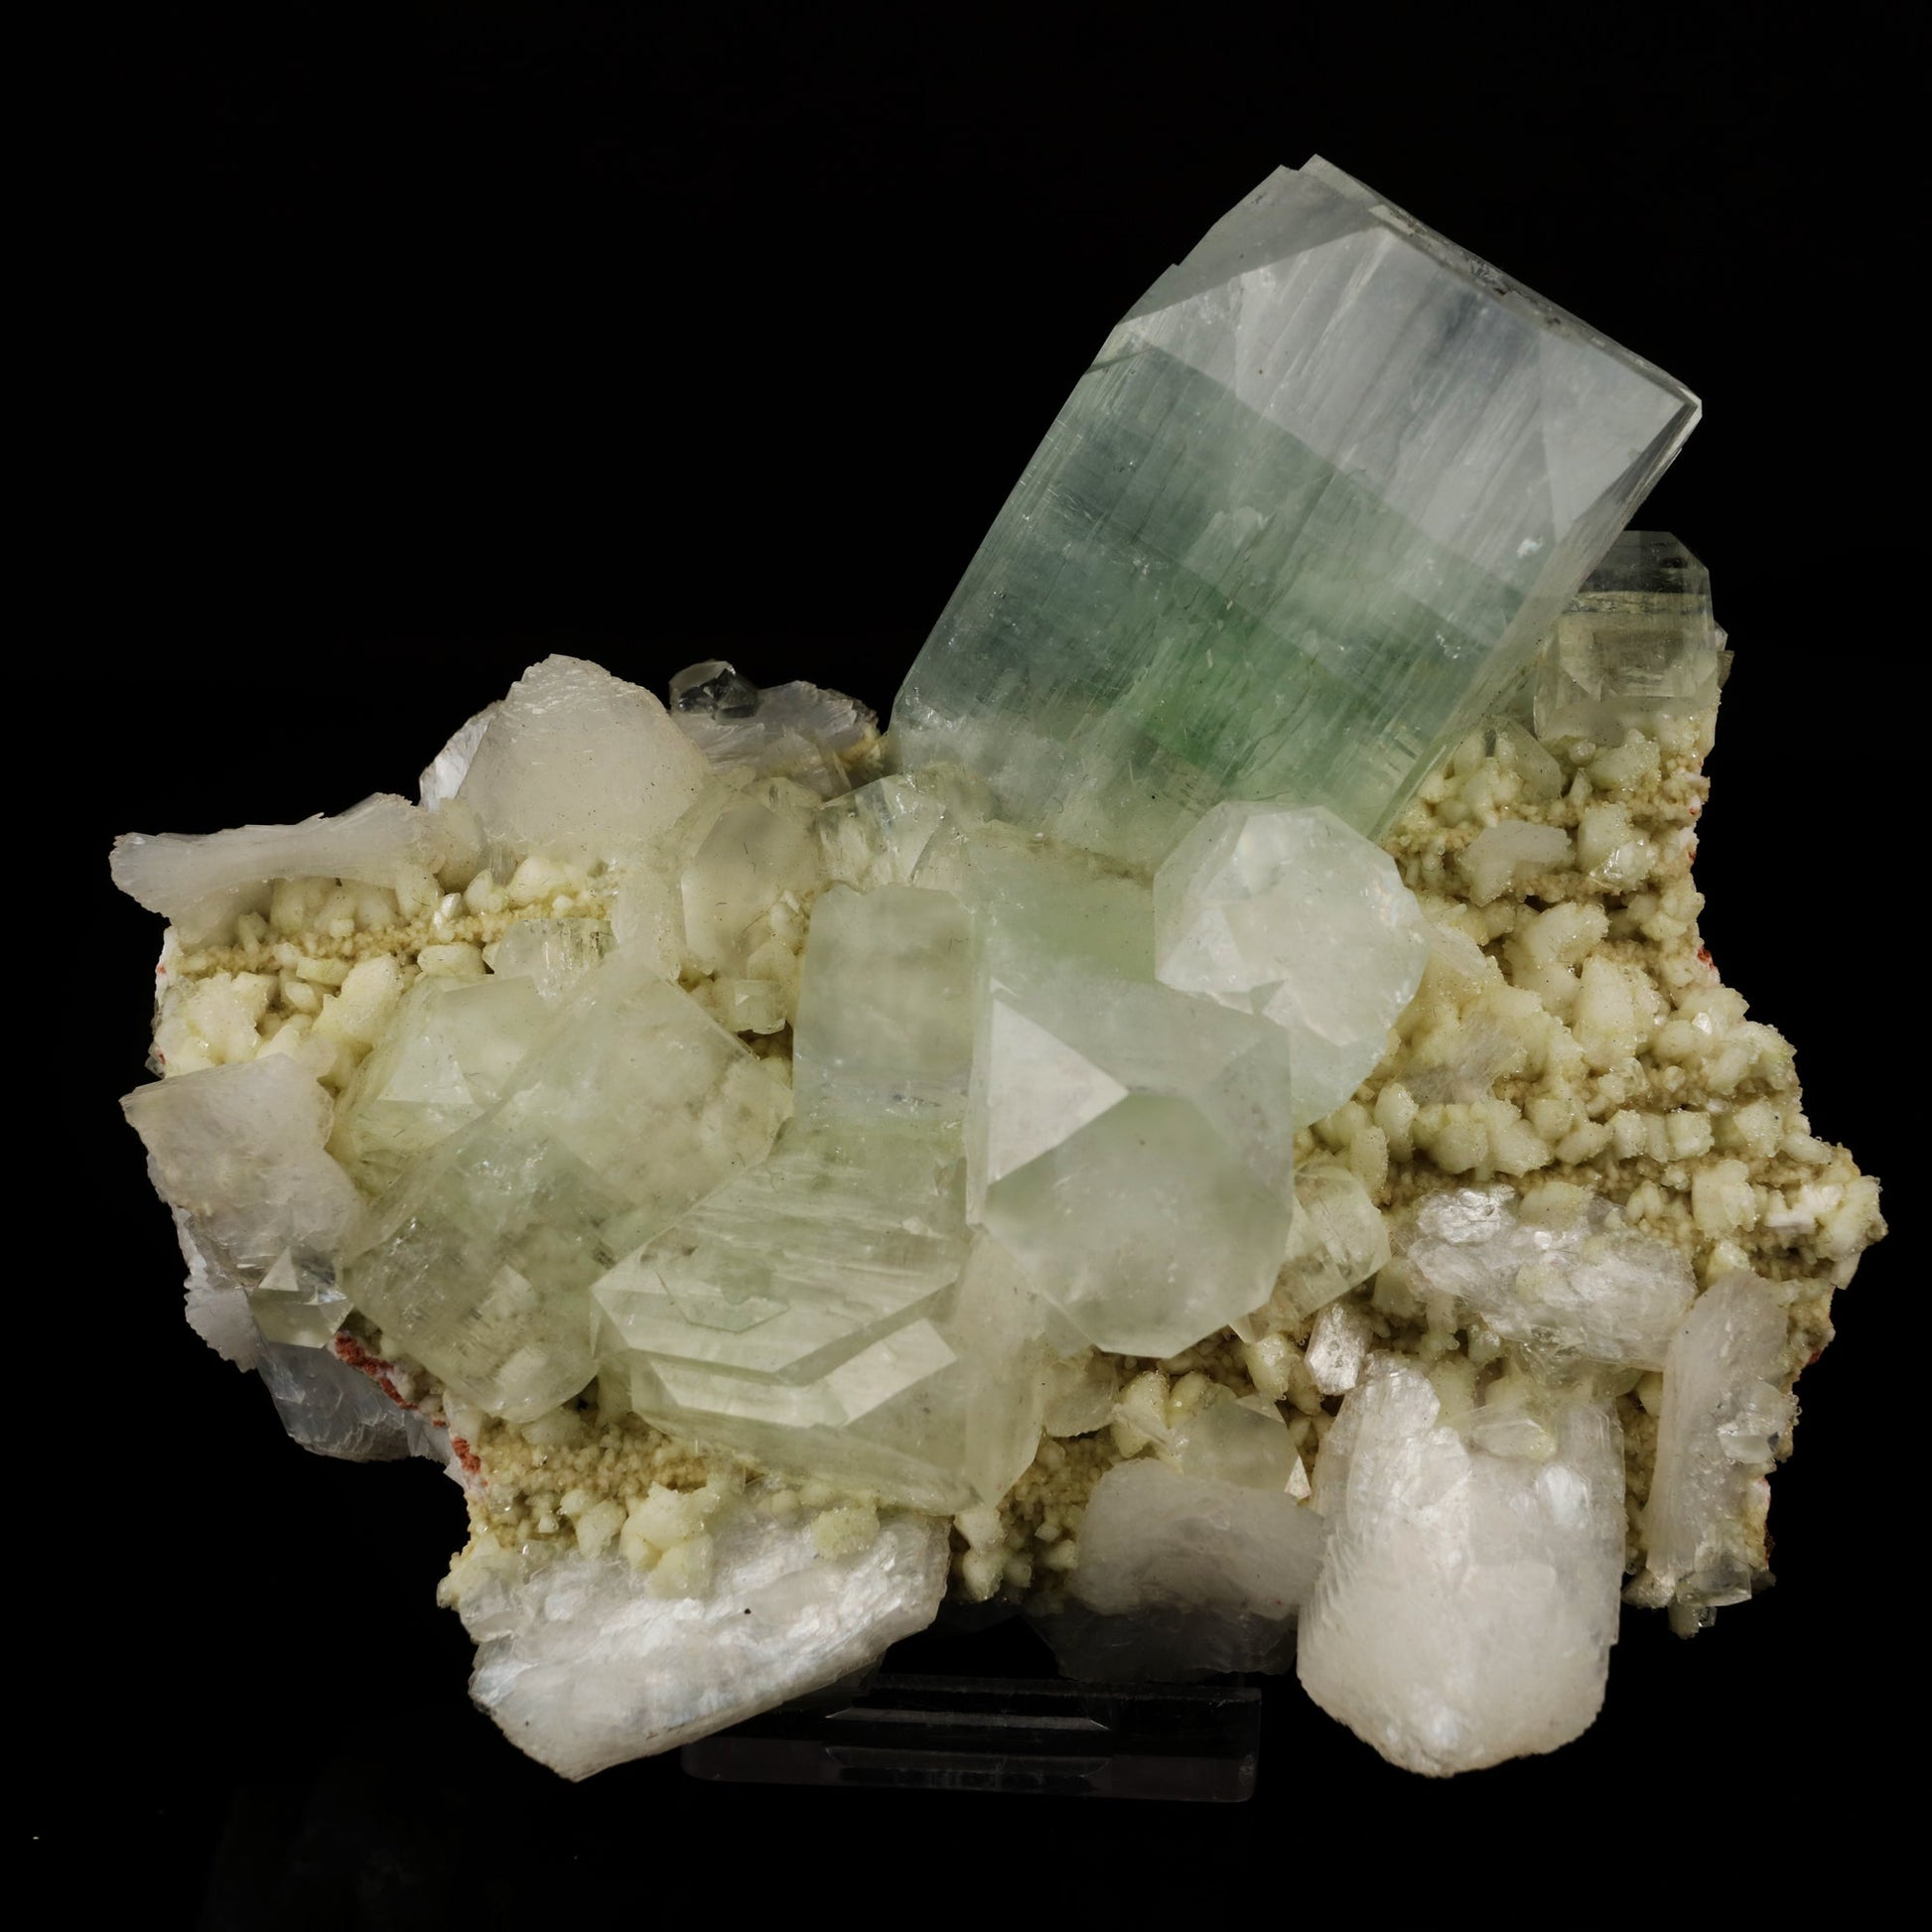 Apophyllite green cube with Stilbite Natural Mineral Specimen # B 5981 Apophyllite Superb Minerals 